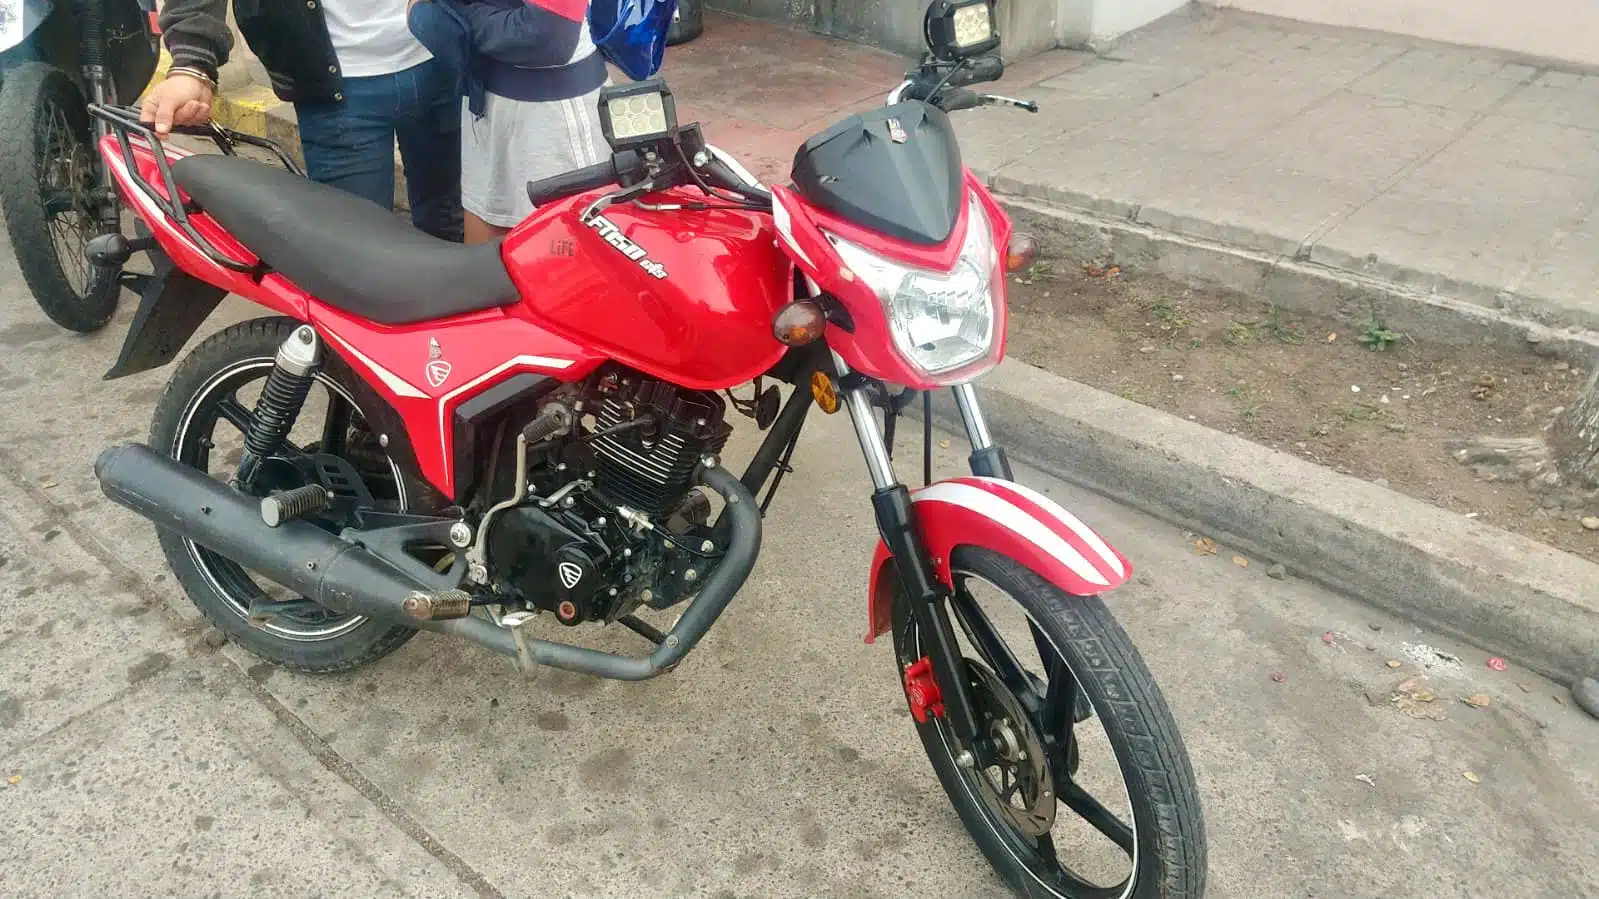 Motocicleta robada en la que viajaba José David cuando lo detuvieron en Culiacán